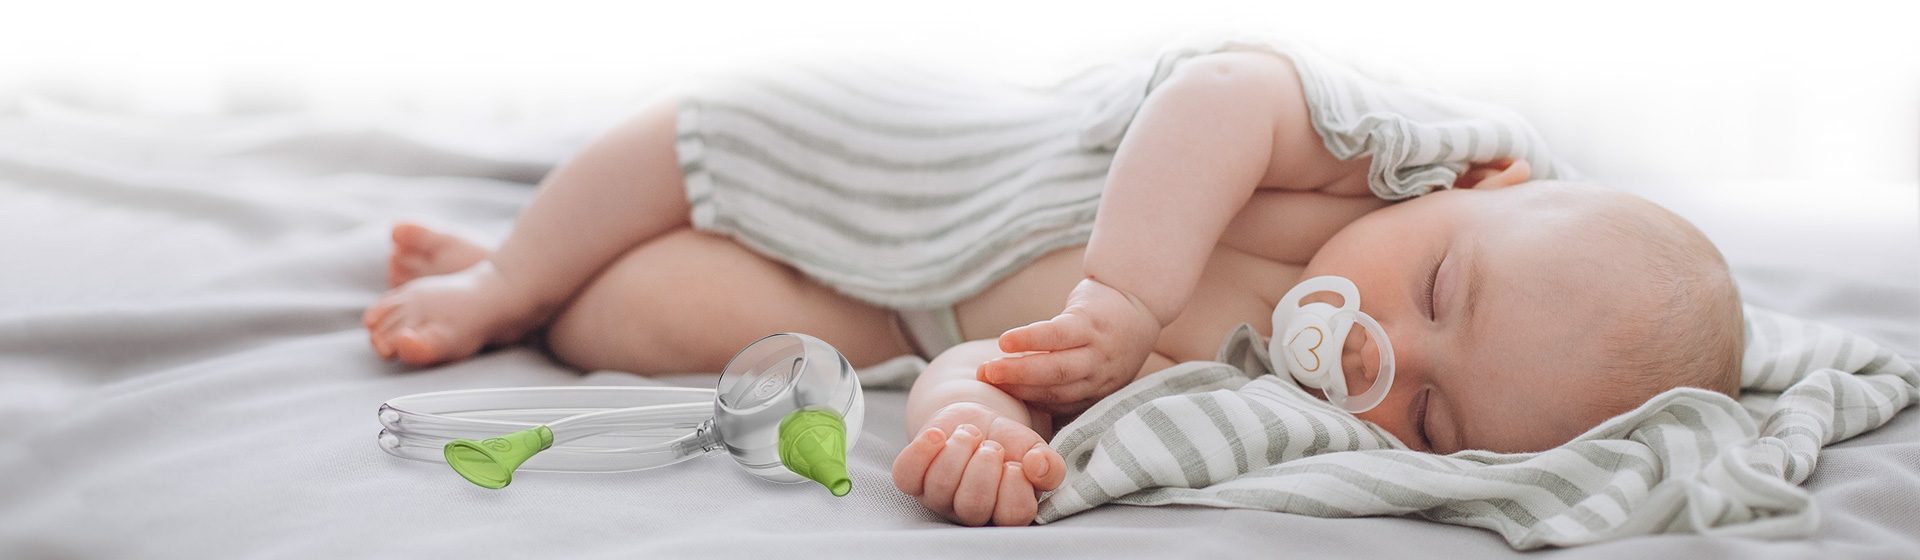 Dowiedz się więcej o ustnym aspiratorze do nosa dla niemowląt Nosiboo Eco, który oczyszcza nosek korzystając z siły Twoich płuc